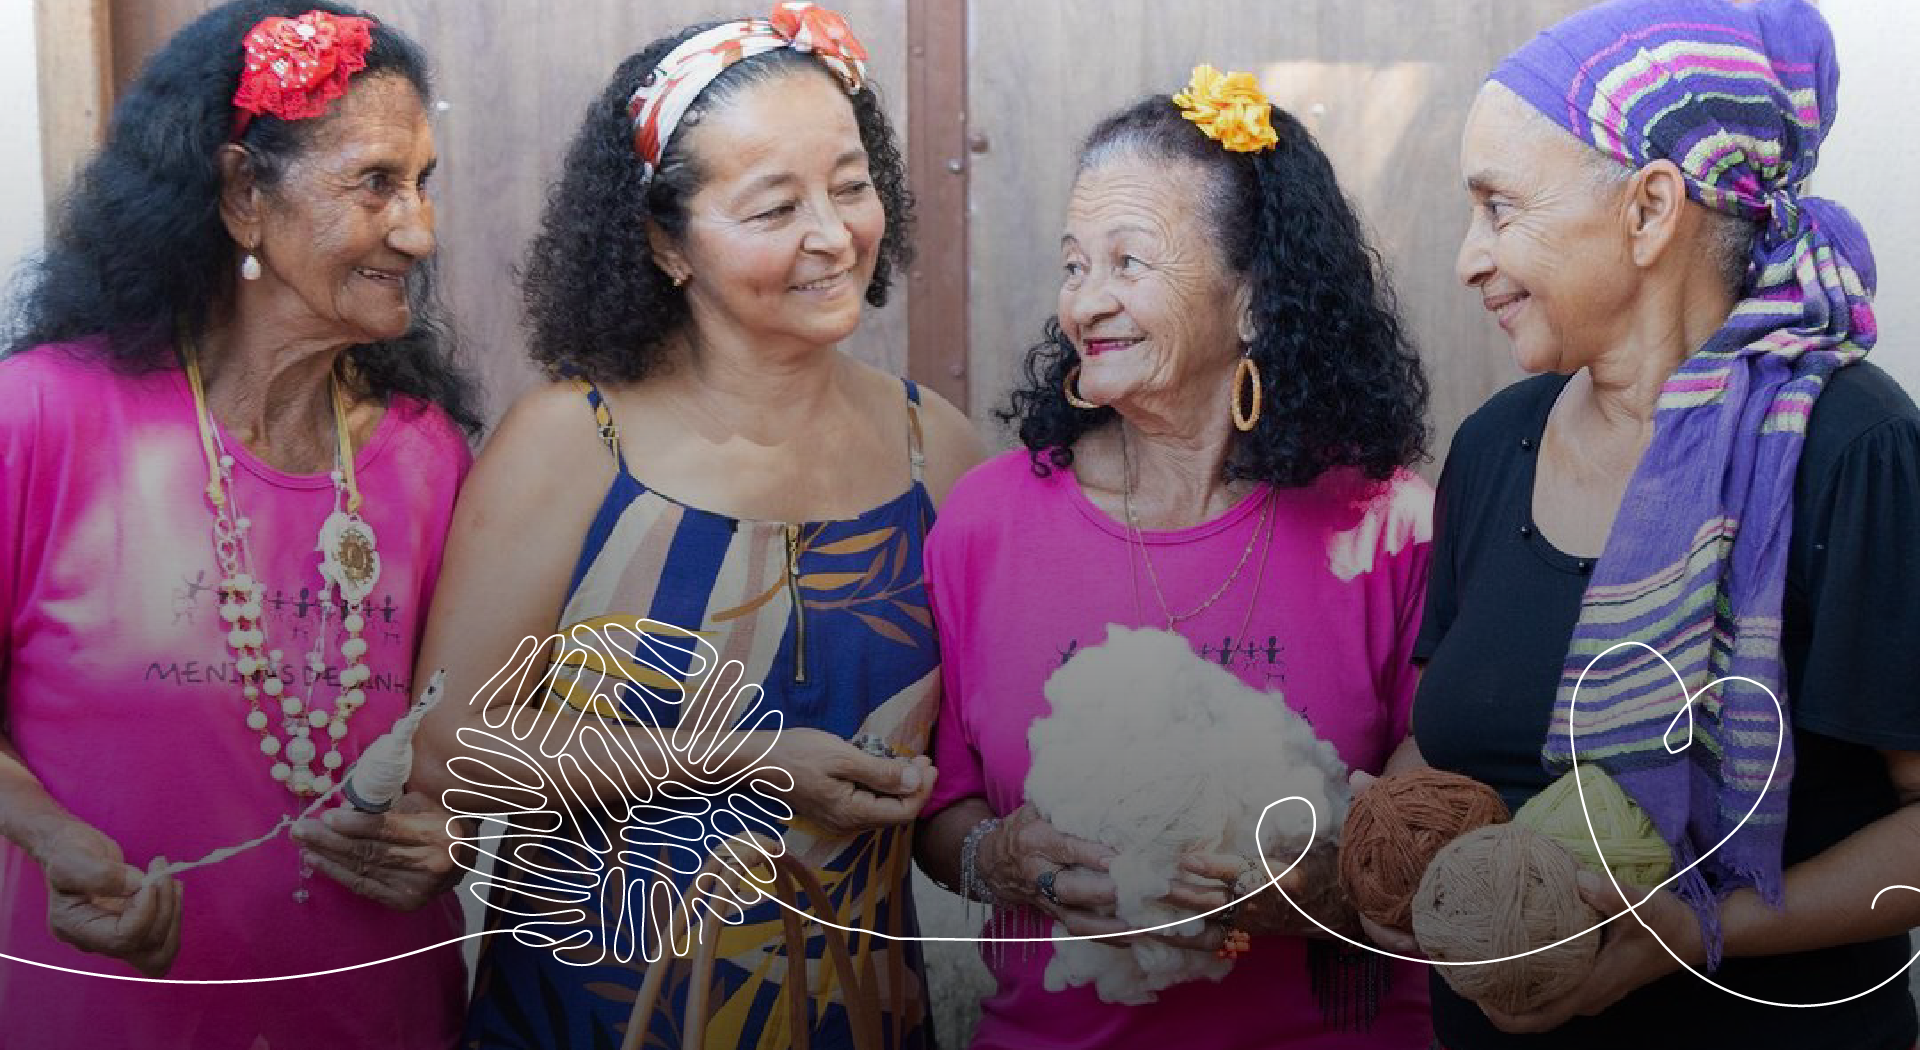 Quatro mulheres idosas, usando roupas coloridas, seguram objetos relacionados a artesanatos.